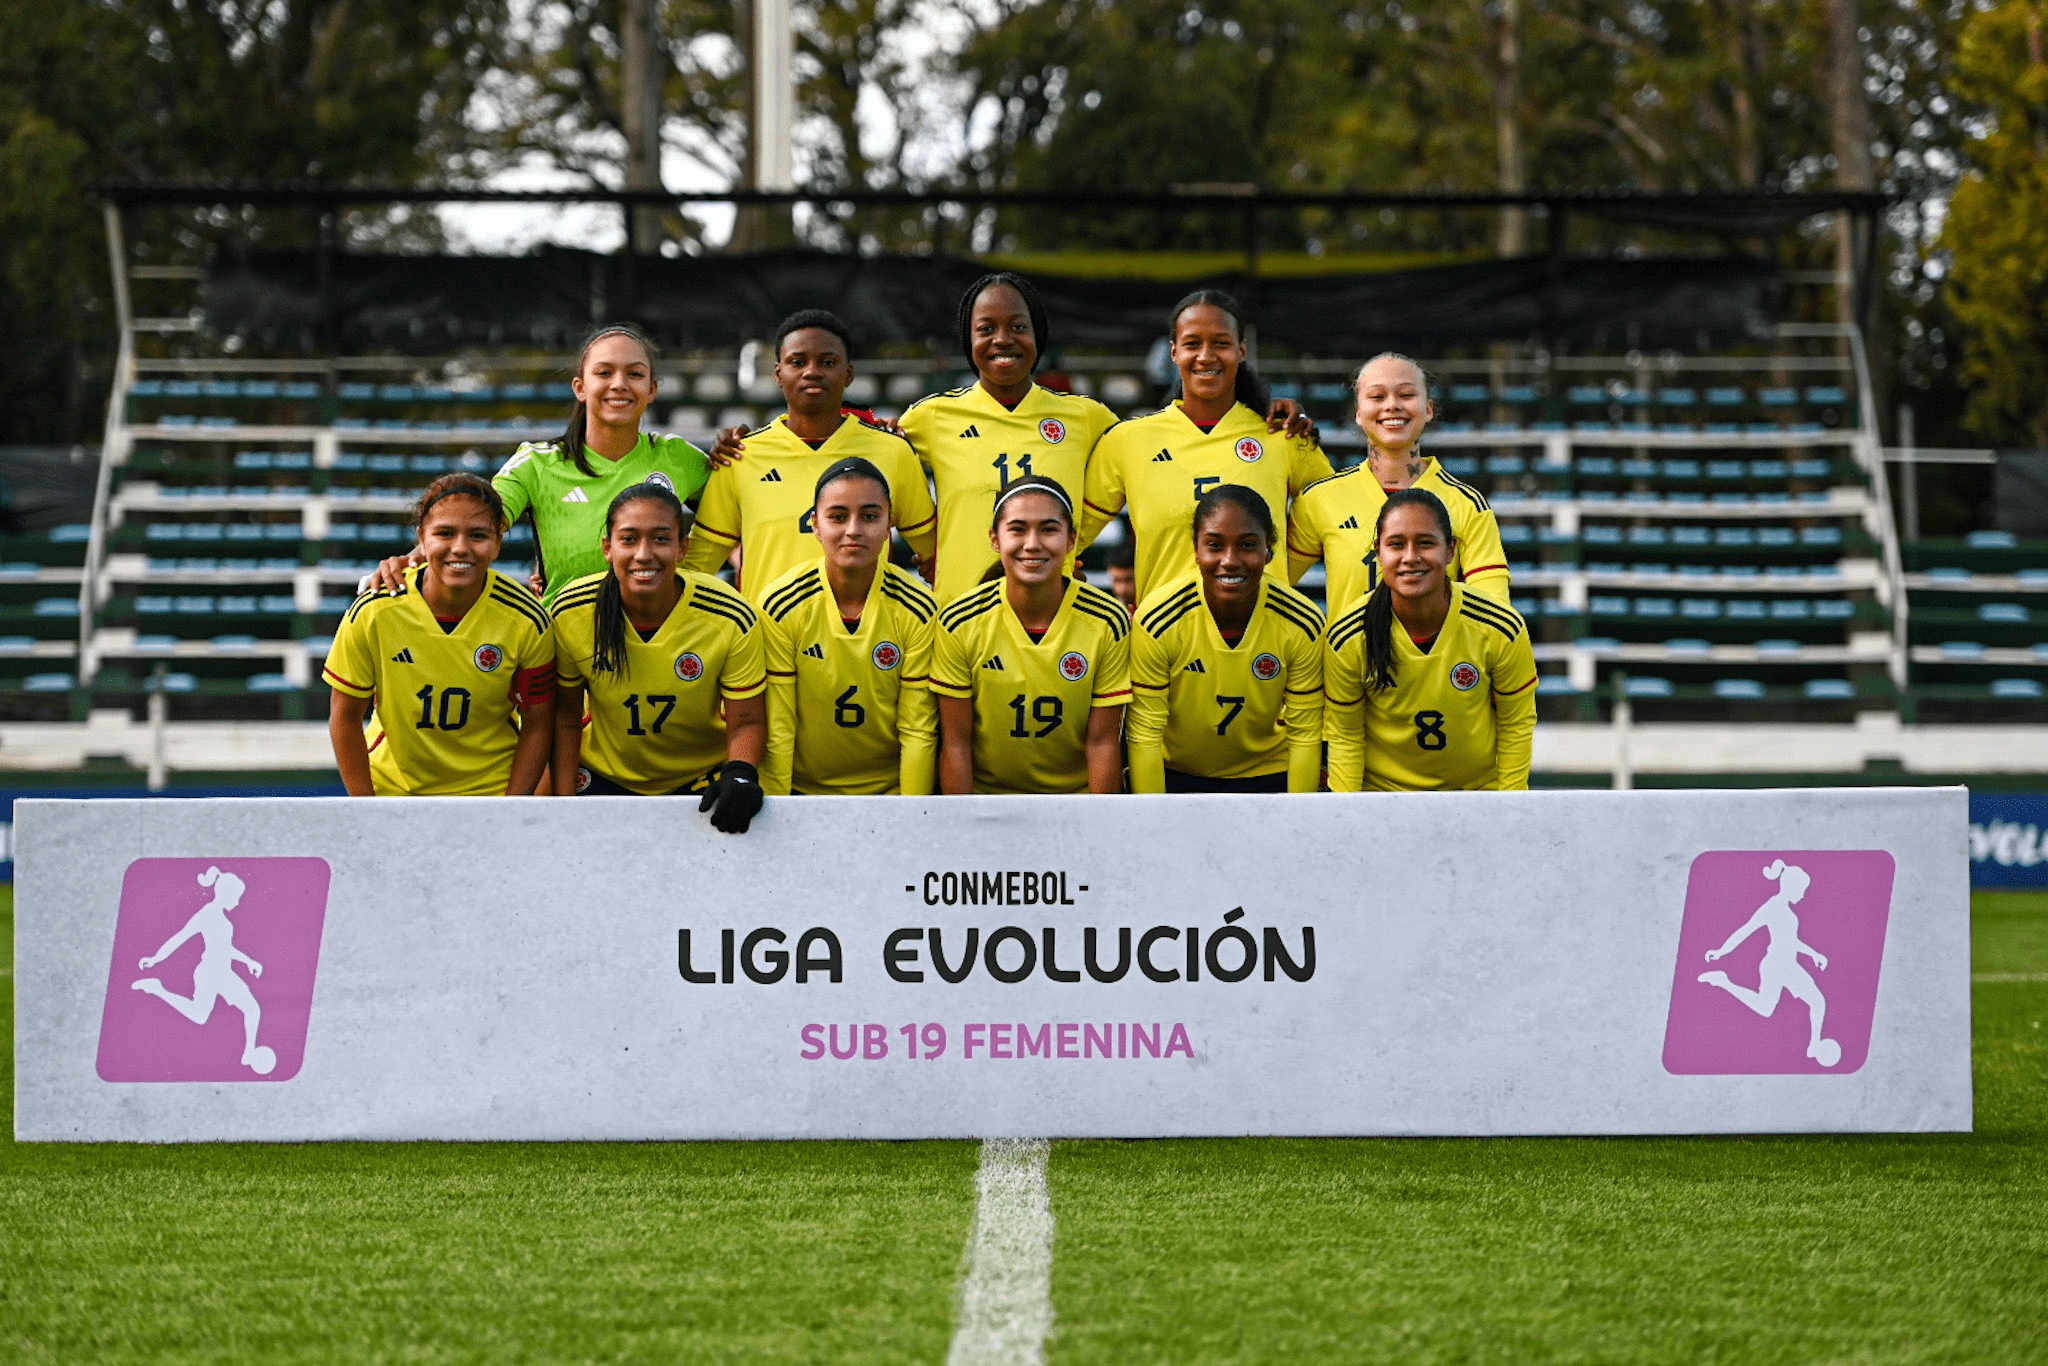 Selección Colombia marcha invicta en el Torneo Evolución Conmebol sub 19